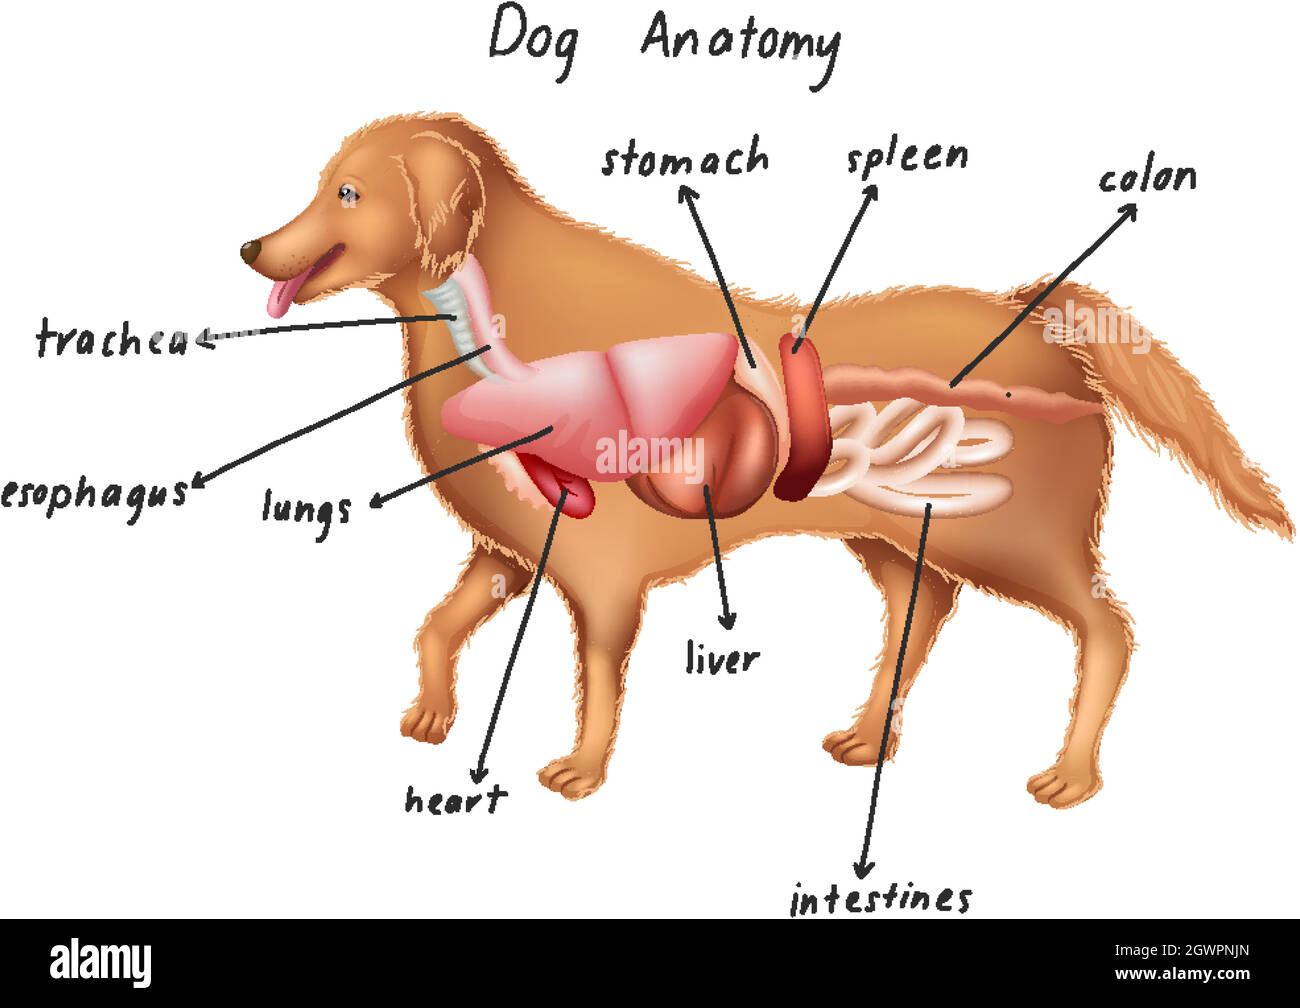 Anatomia del cane immagini e fotografie stock ad alta risoluzione - Alamy